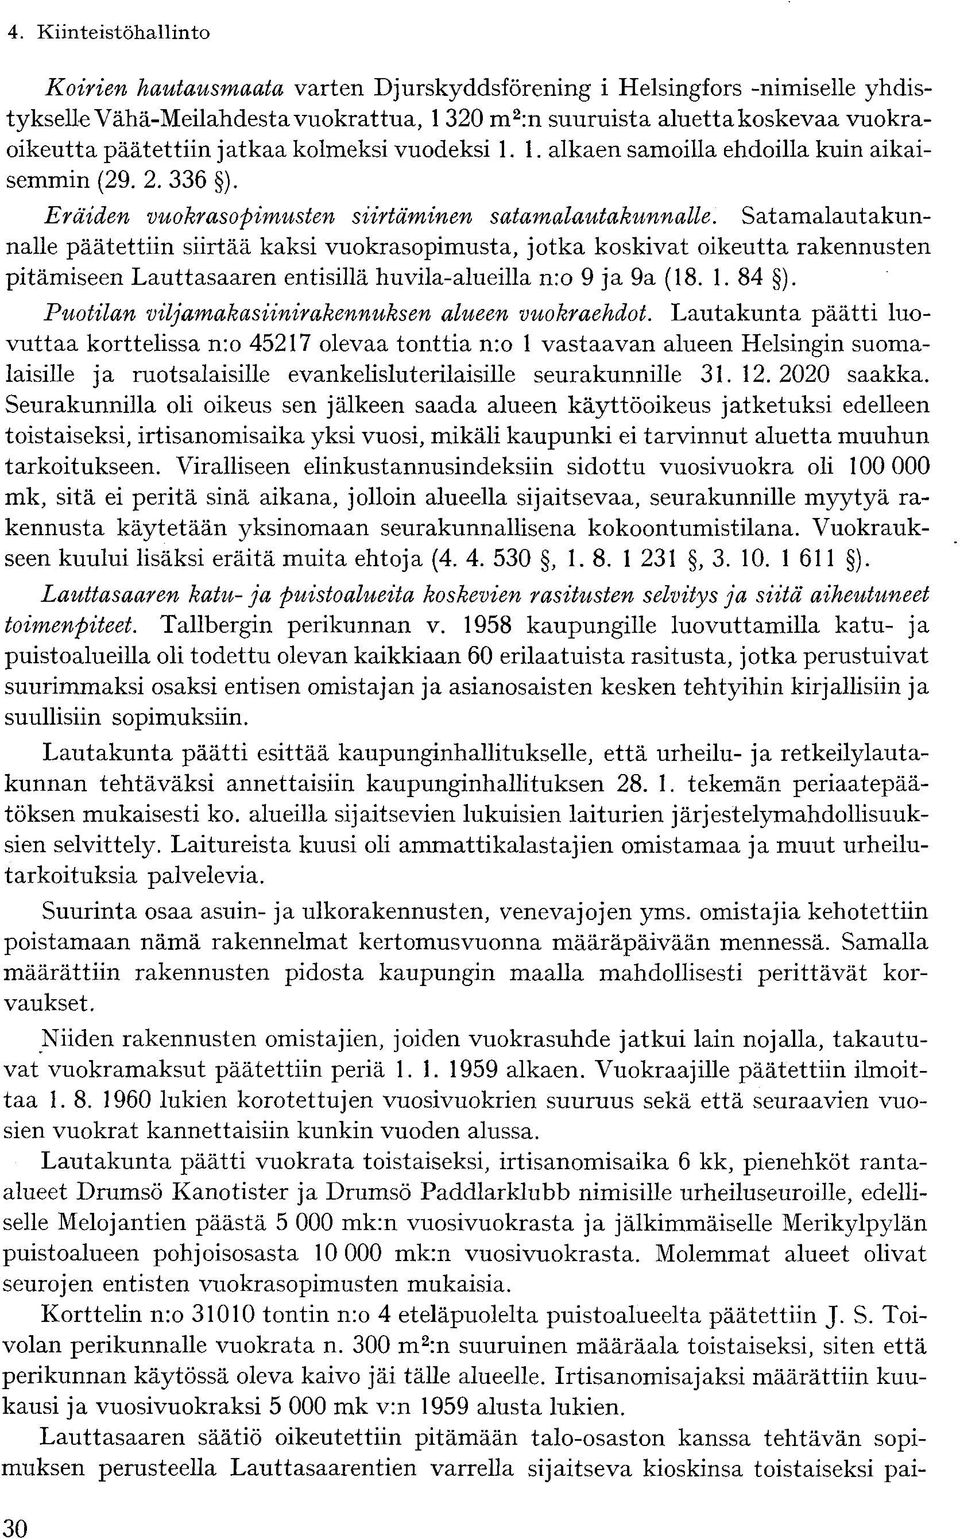 Satamalautakunnalle päätettiin siirtää kaksi vuokrasopimusta, jotka koskivat oikeutta rakennusten pitämiseen Lauttasaaren entisillä huvila-alueilla n:o 9 ja 9a (18. 1. 84 ).